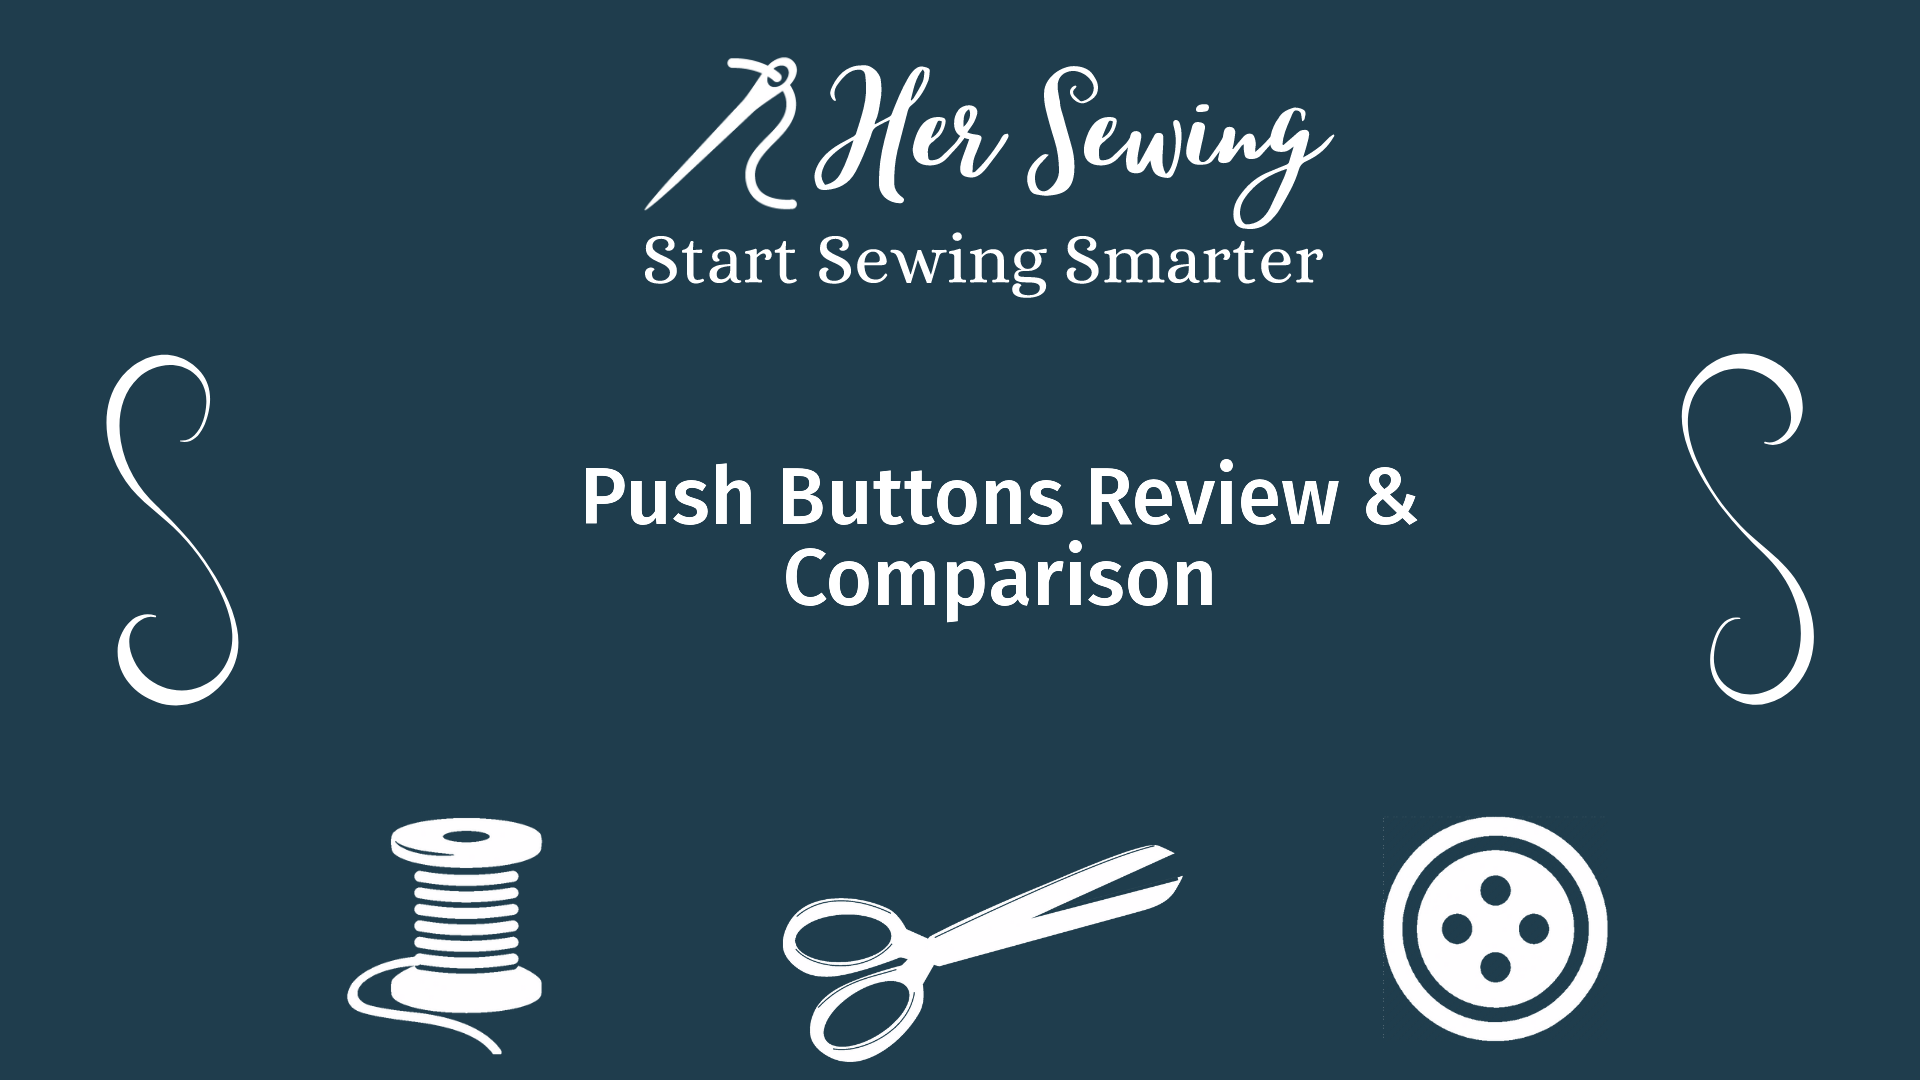 Push Buttons Review & Comparison